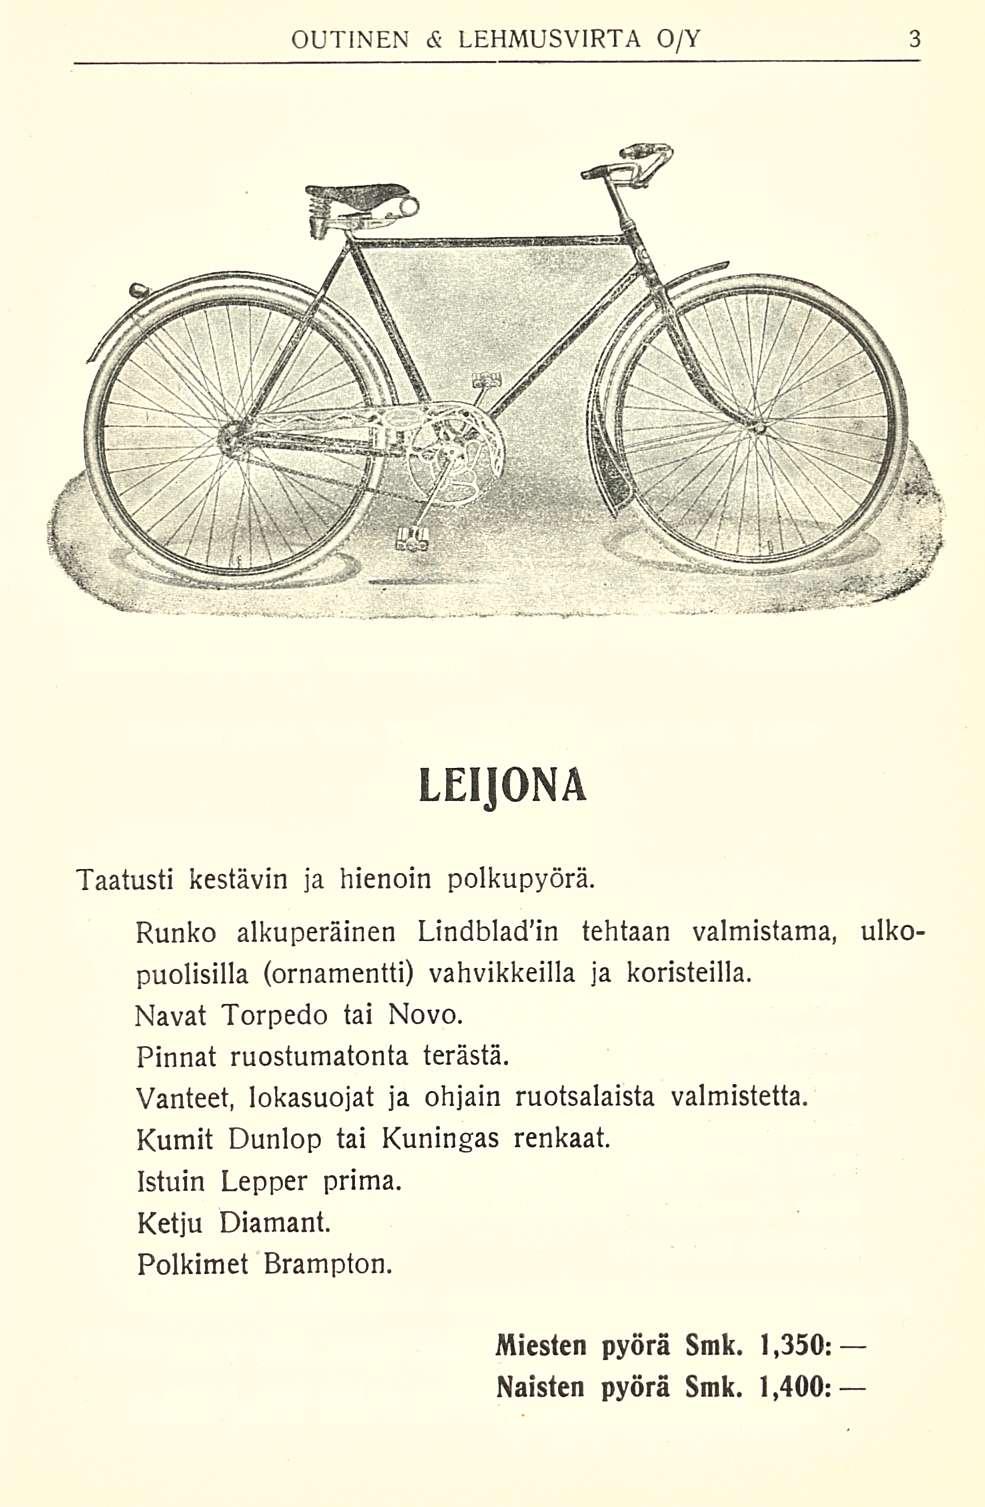 LEIJONA Taatusti kestävin ja hienoin polkupyörä. Runko alkuperäinen Lindbladin tehtaan valmistama, puolisilla (ornamentti) vahvikkeilla ja koristeilla. Navat Torpedo tai Novo.